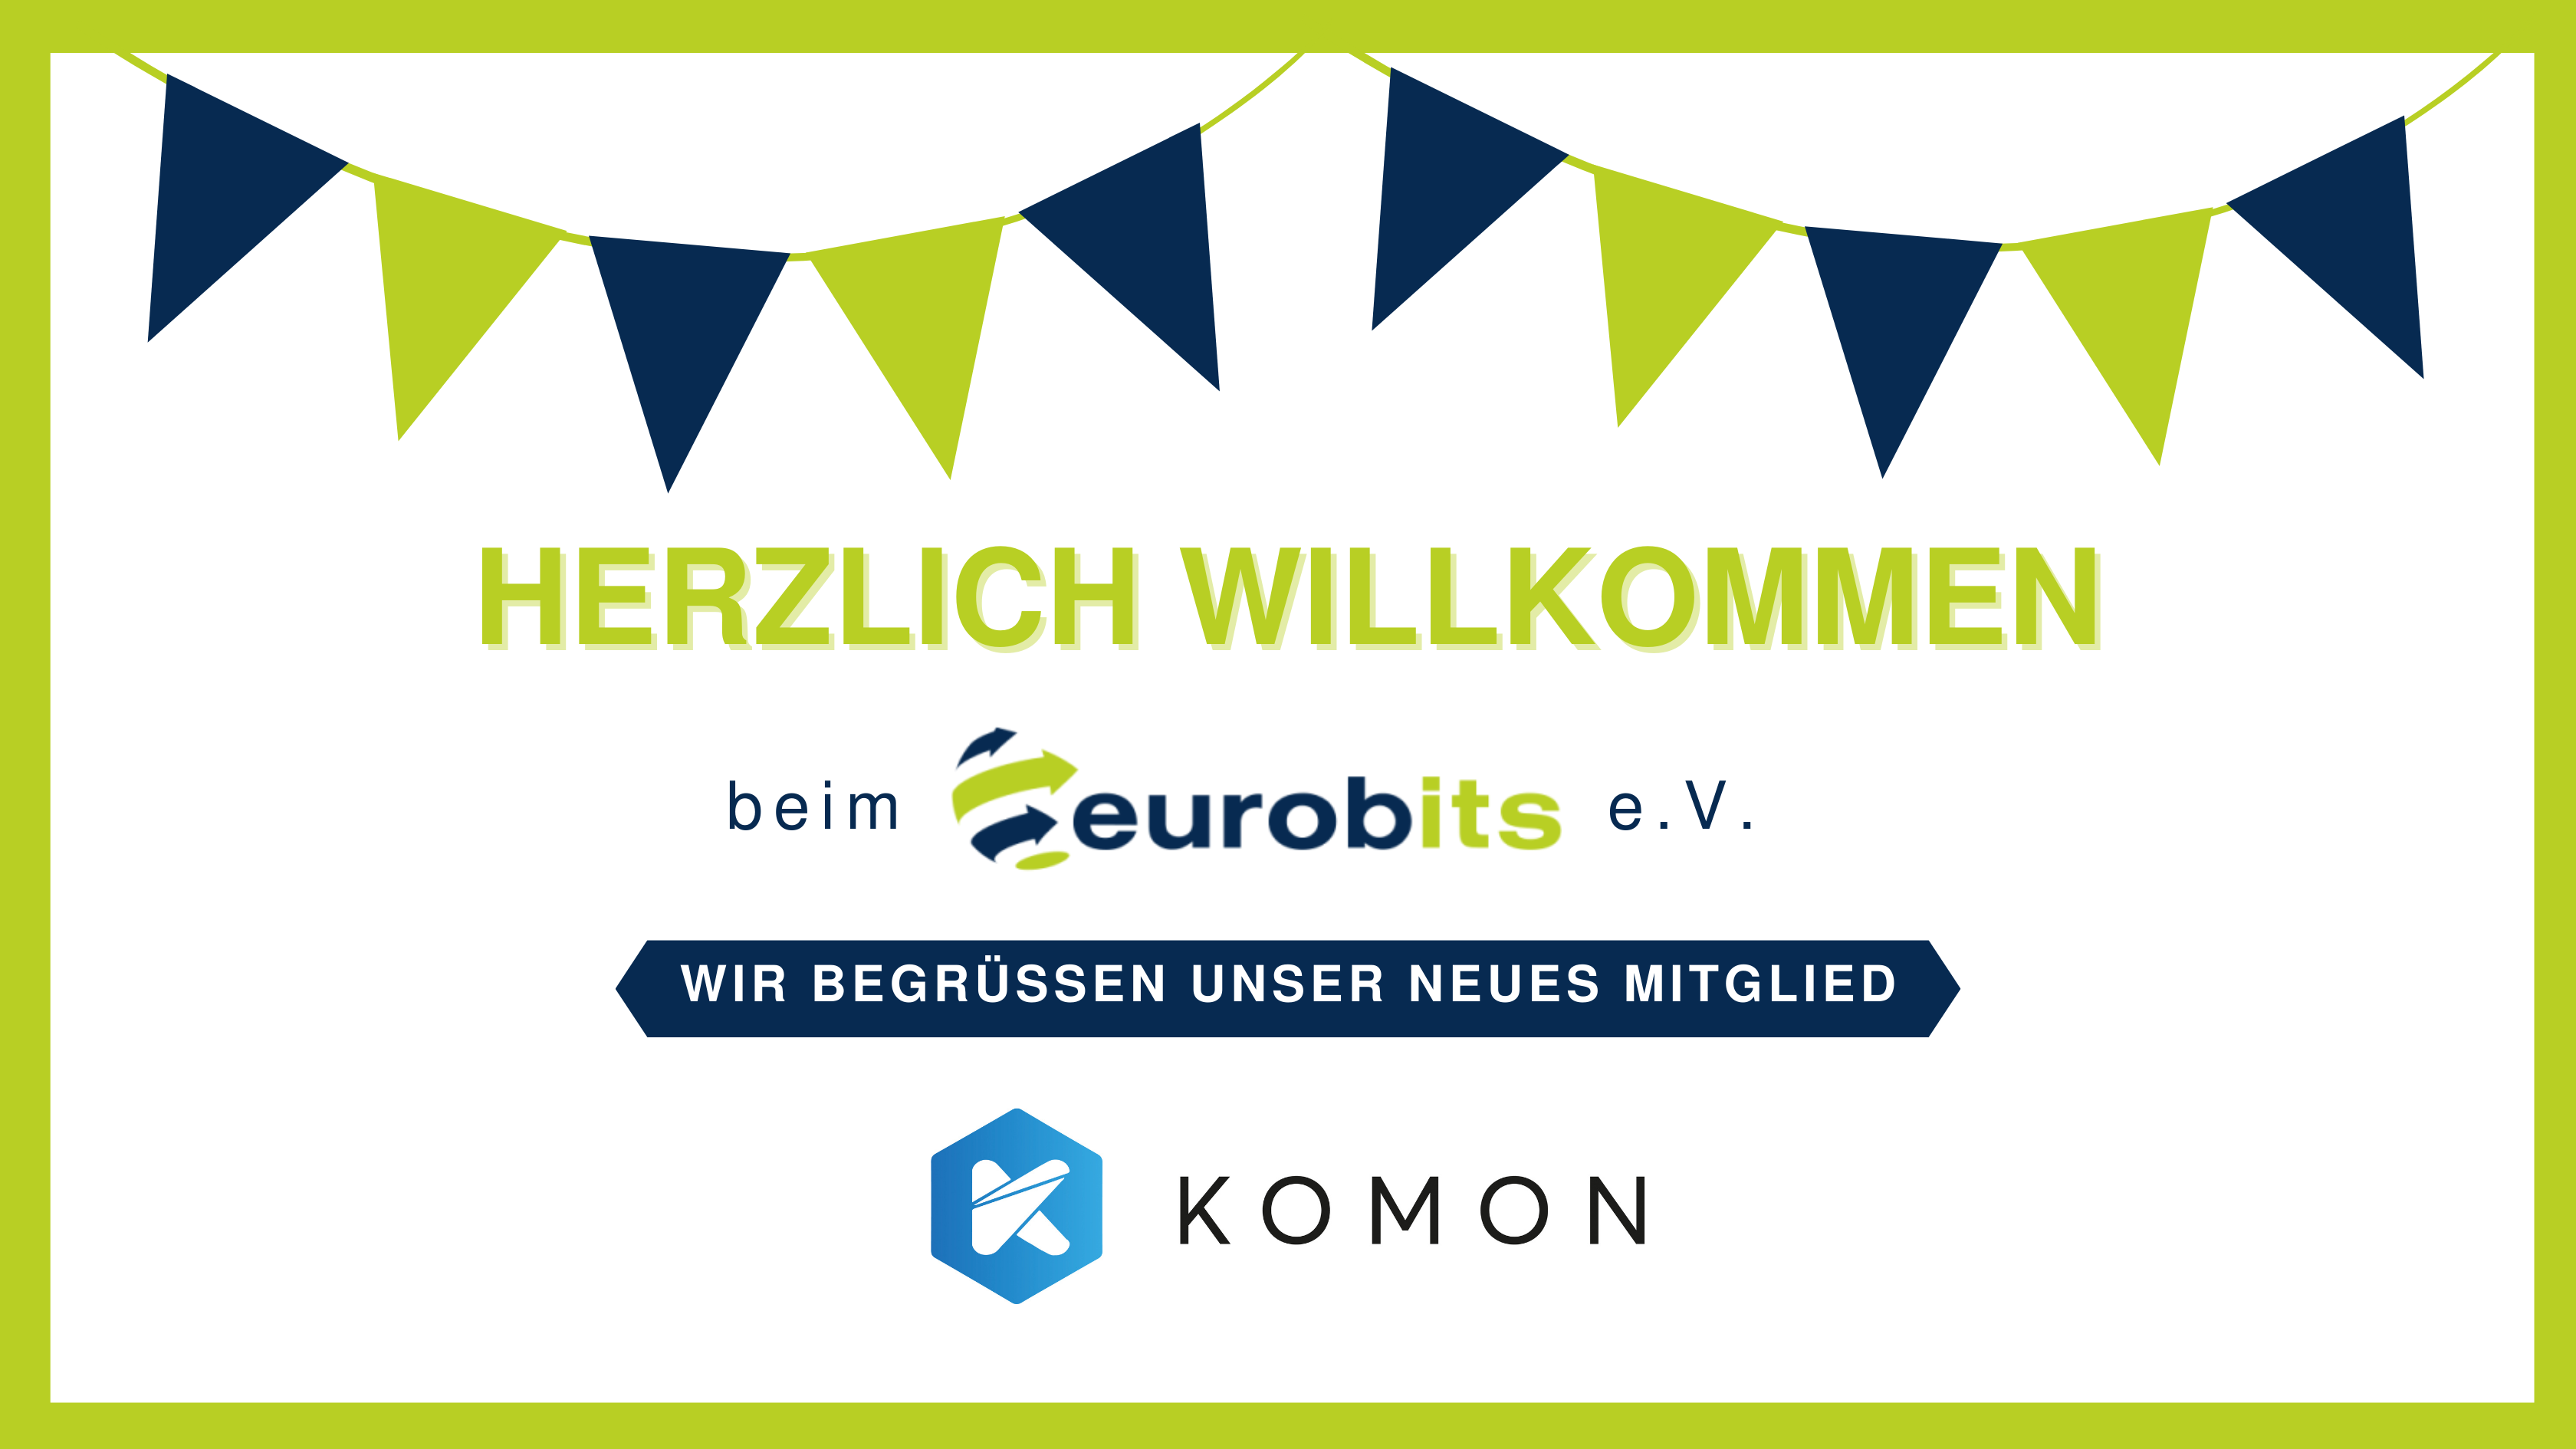 Herzlich Willkommen – KOMON Analytics GmbH